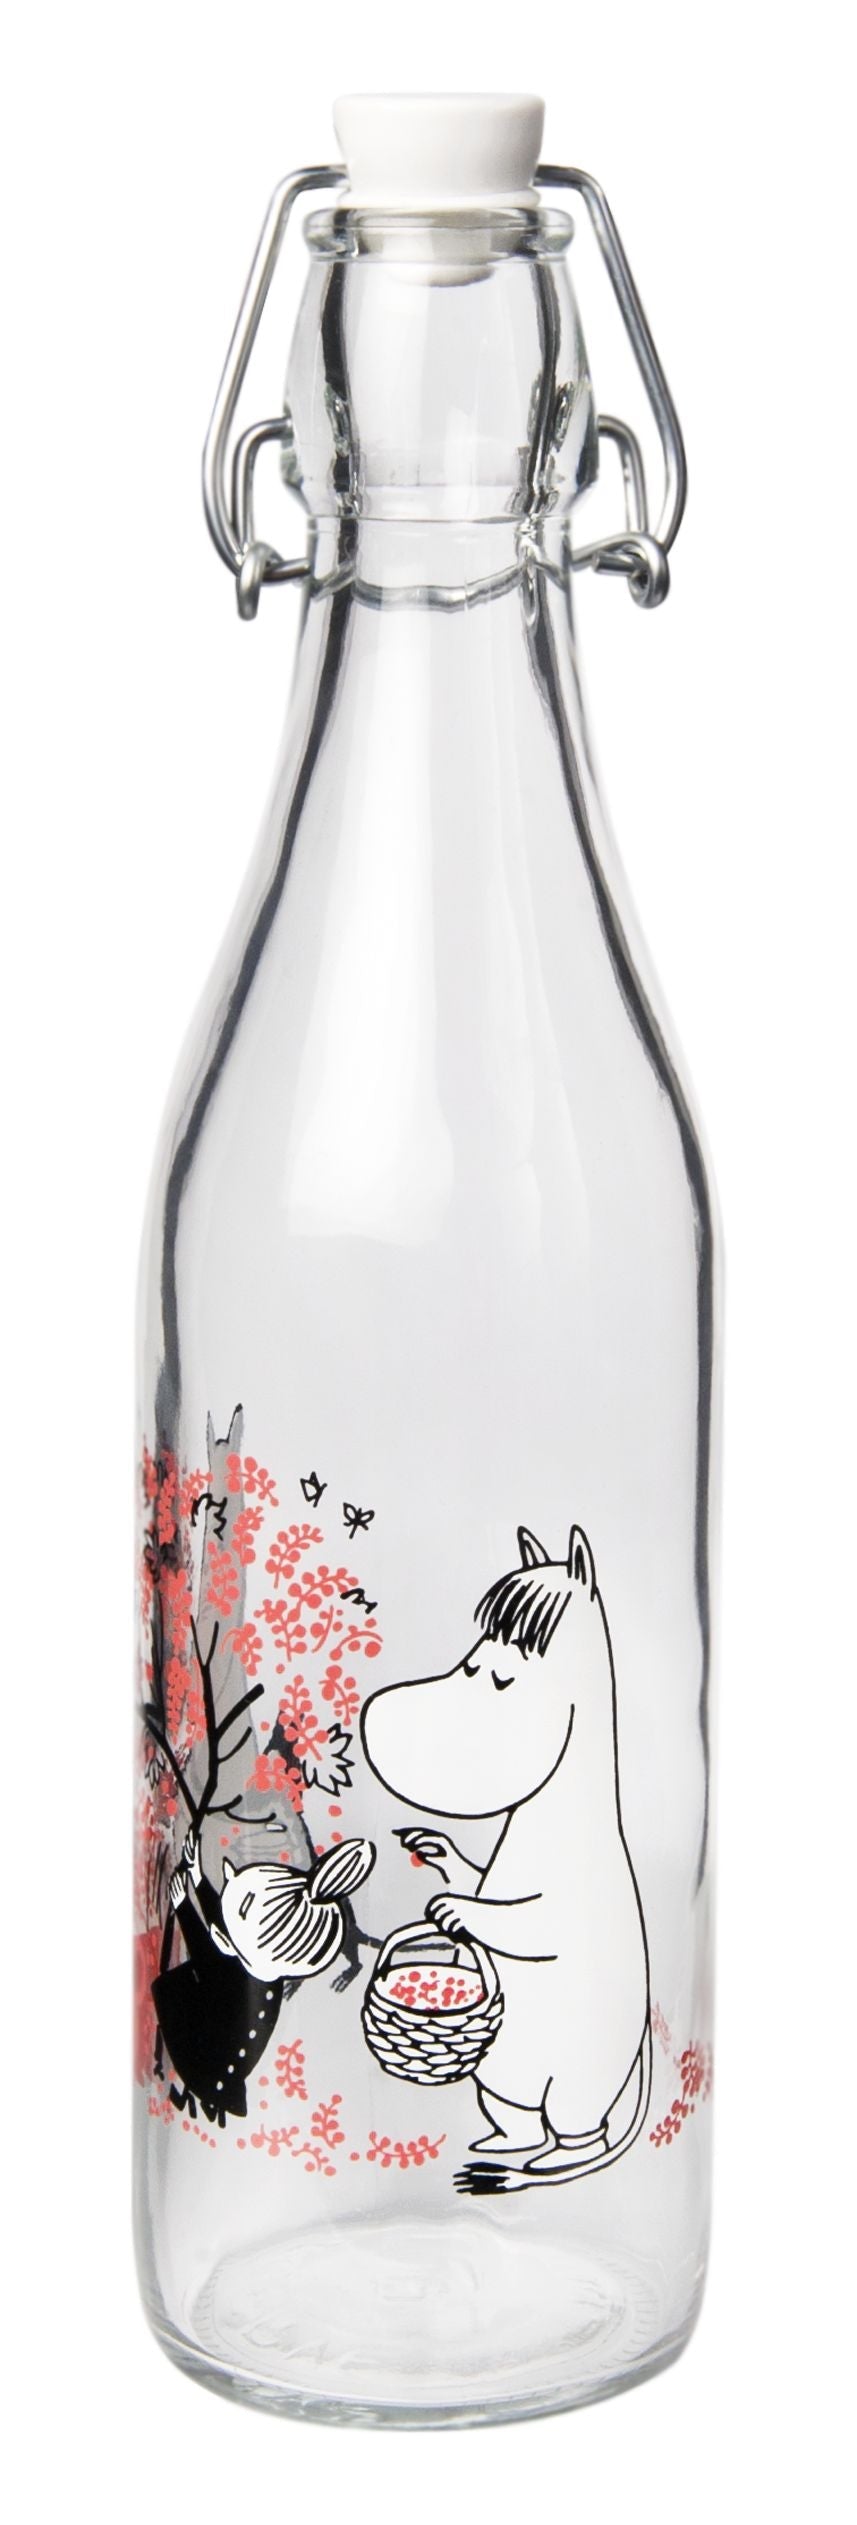 Muurla Moomin Glass Bottle, Berries